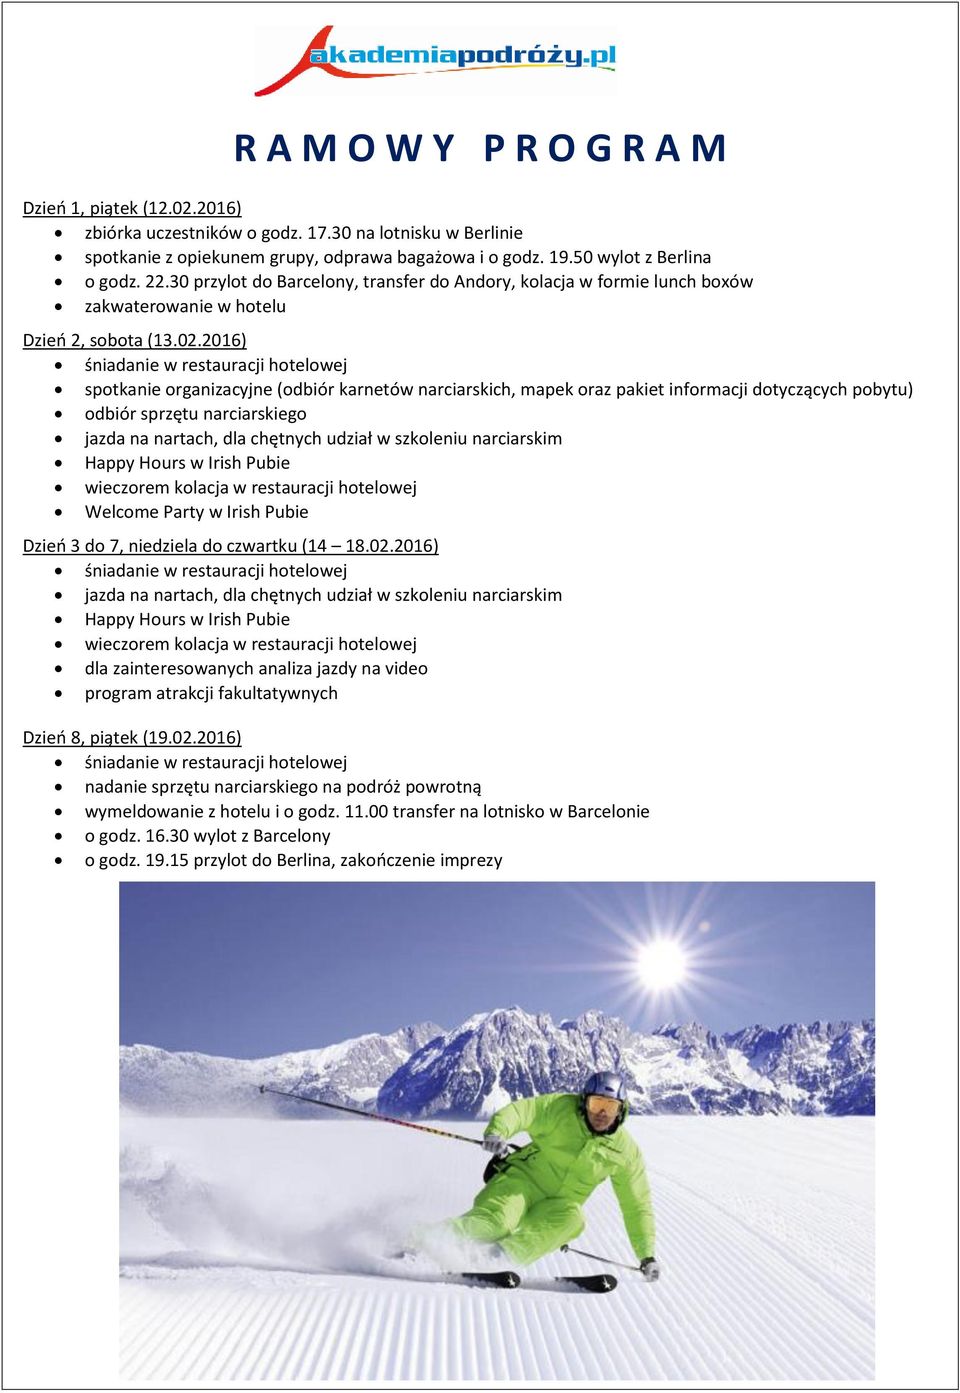 2016) spotkanie organizacyjne (odbiór karnetów narciarskich, mapek oraz pakiet informacji dotyczących pobytu) odbiór sprzętu narciarskiego jazda na nartach, dla chętnych udział w szkoleniu